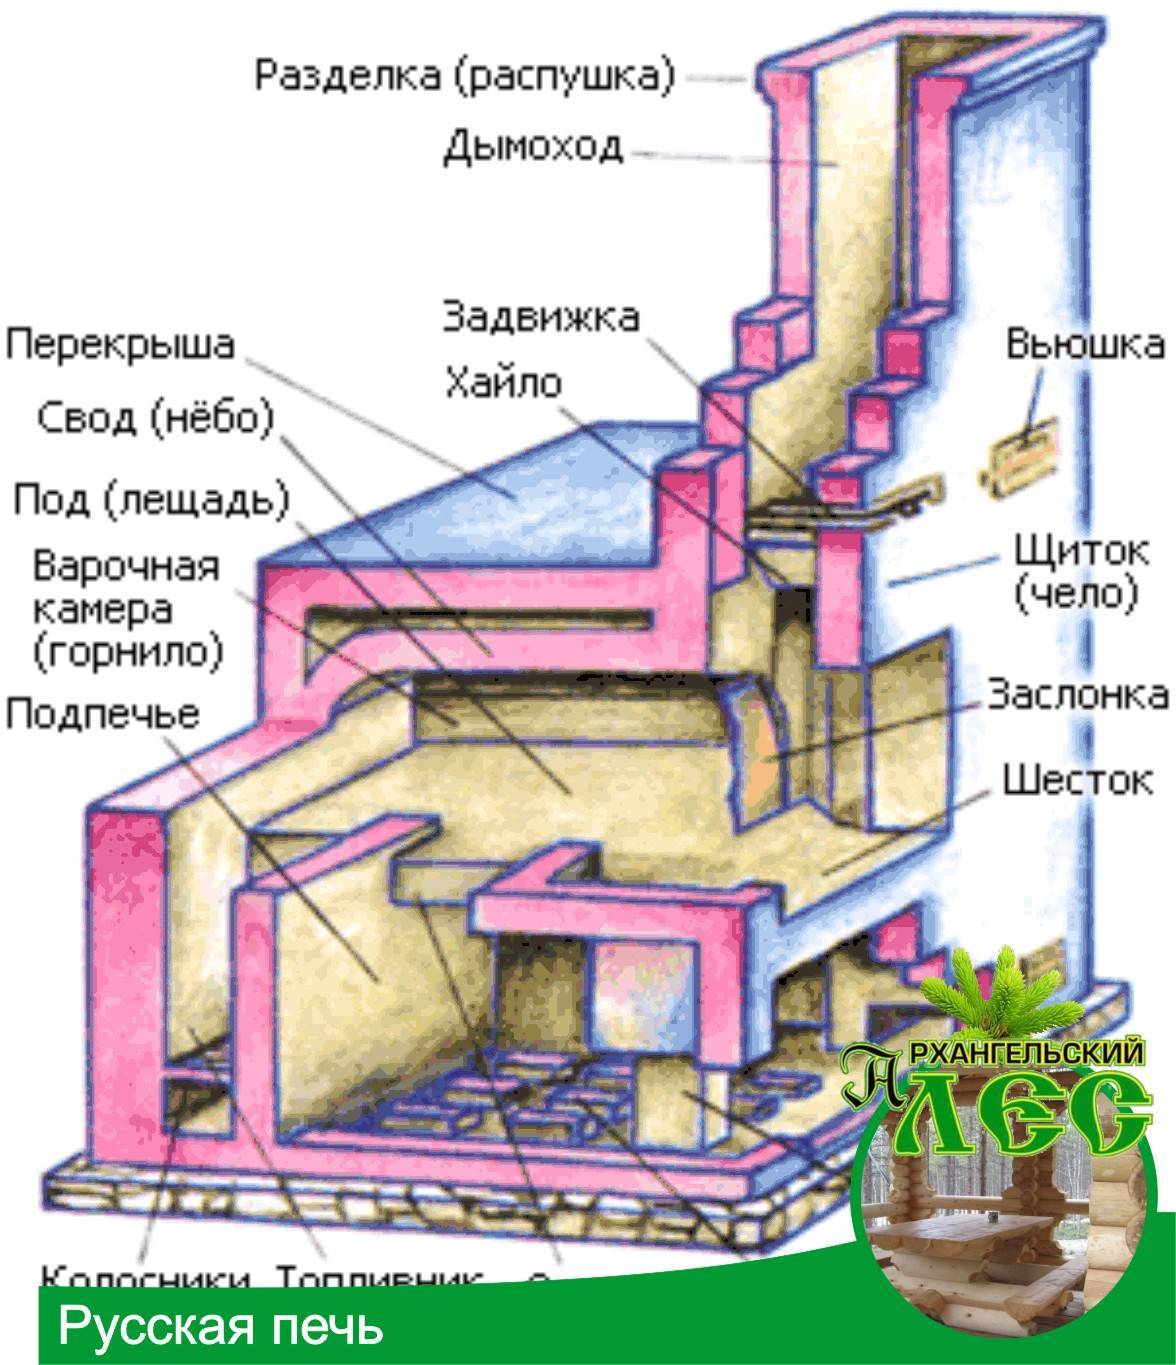 Русская печь: схема строительства, принцип работы, варианты порядовки